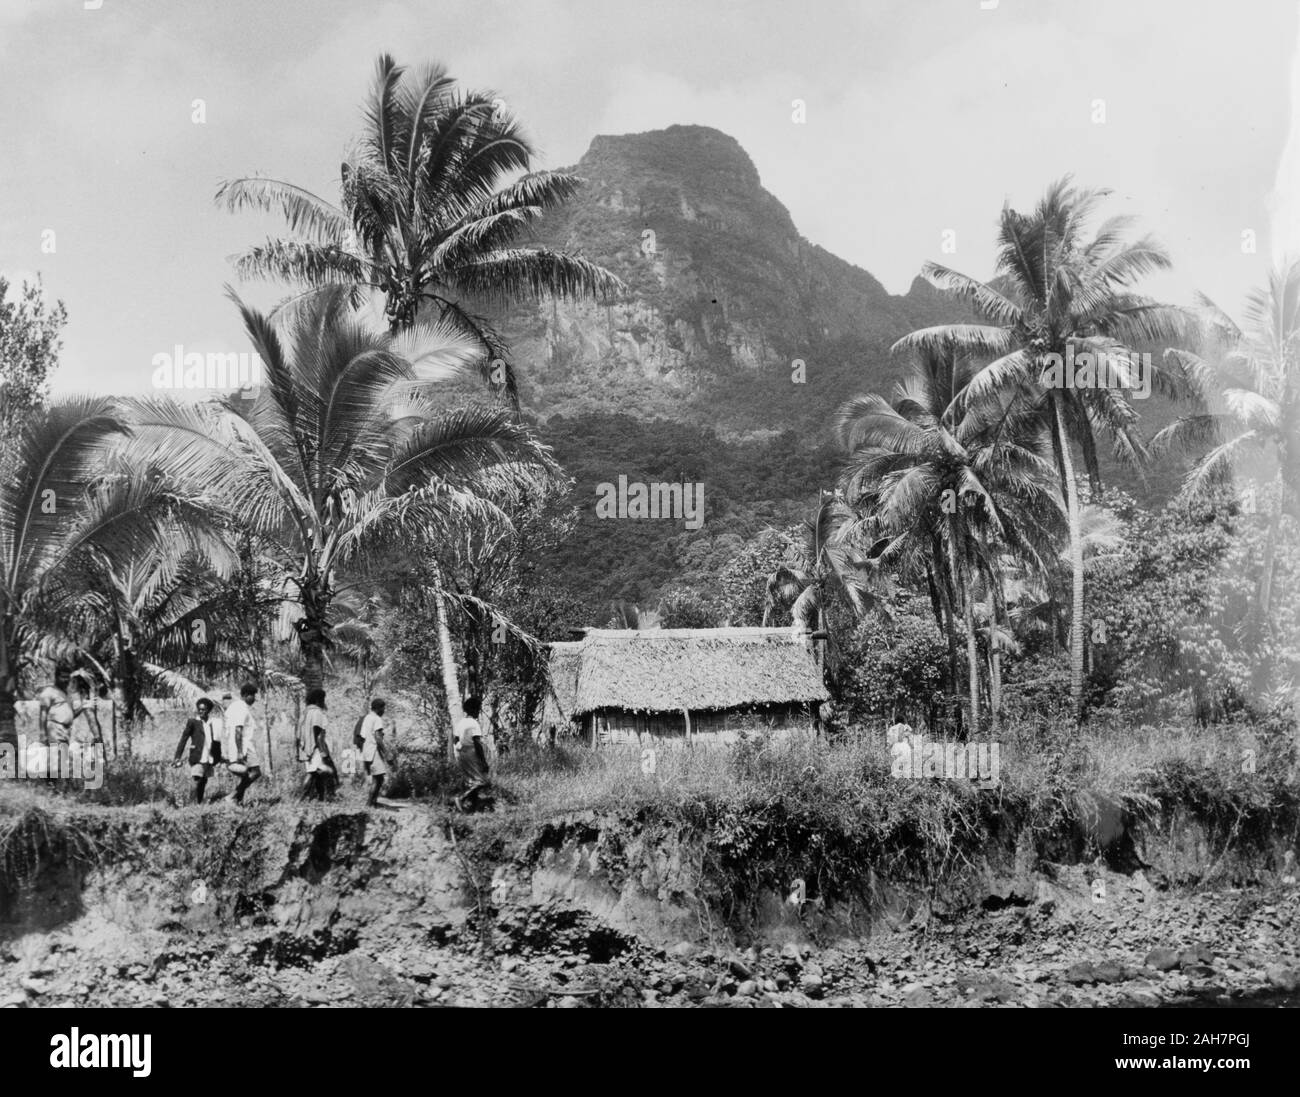 Fiji, tornando a casa, FijiA linea di persone a tornare a casa per la loro tradizionale Fijiano bures "' (abitazioni), che si inseriscono in un contesto rurale di Montagne e di palme. La didascalia recita: tornando al loro "Bure' dopo un partito, 1965. 2005/010/1/14/56. Foto Stock